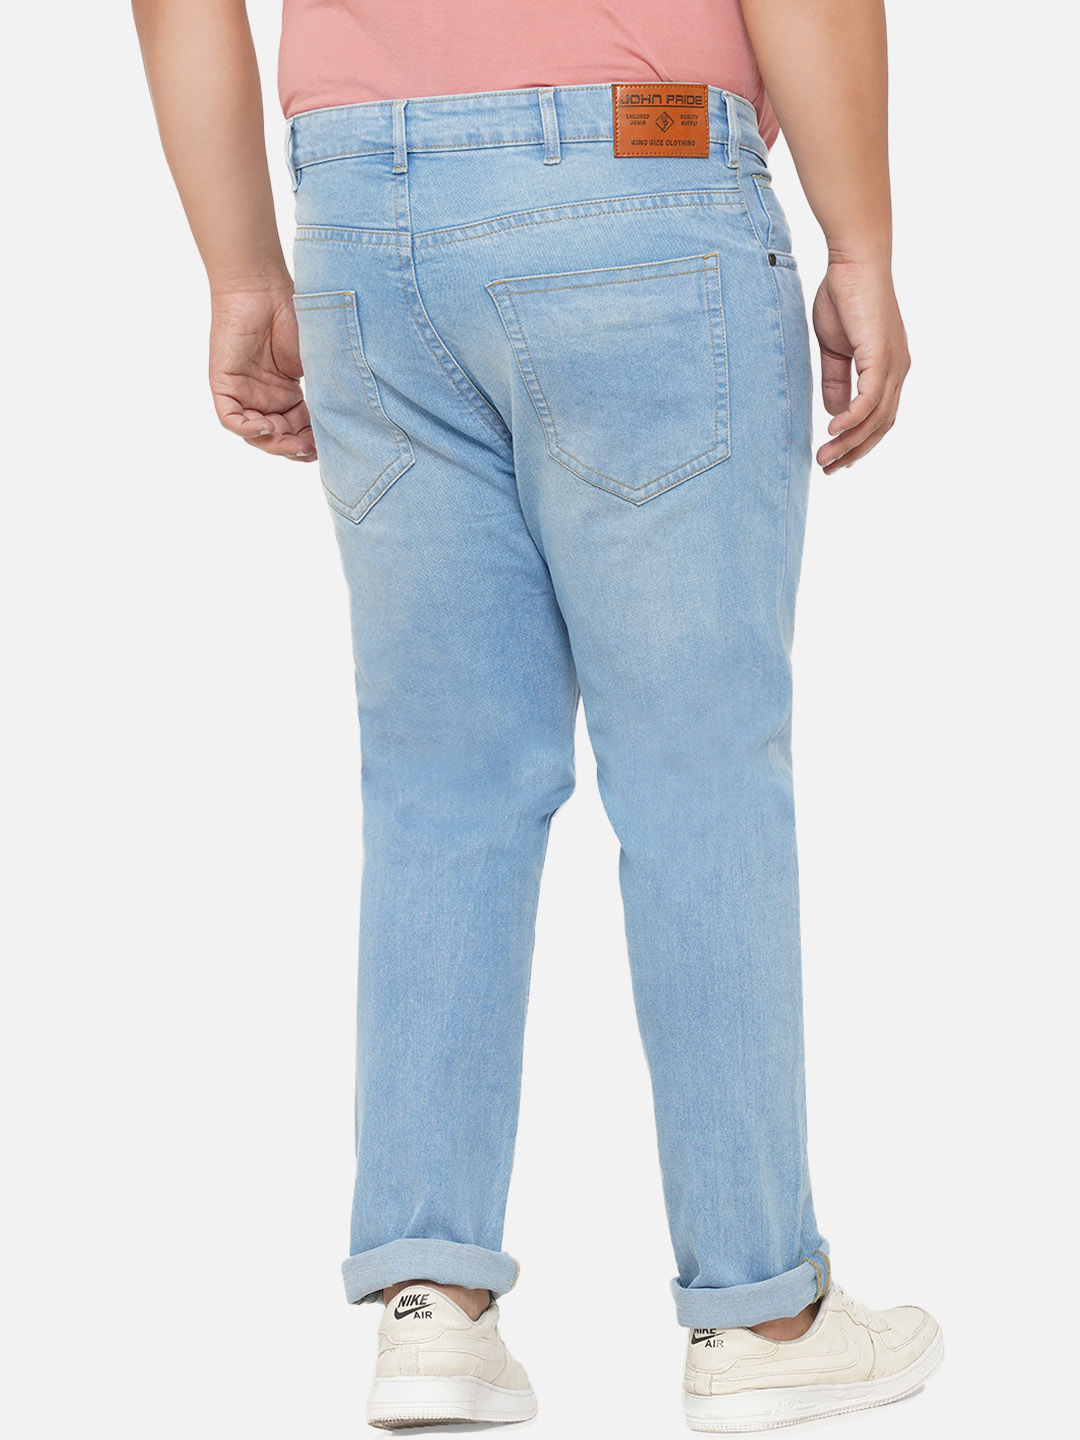 bottomwear/jeans/EJPJ25070/ejpj25070-5.jpg